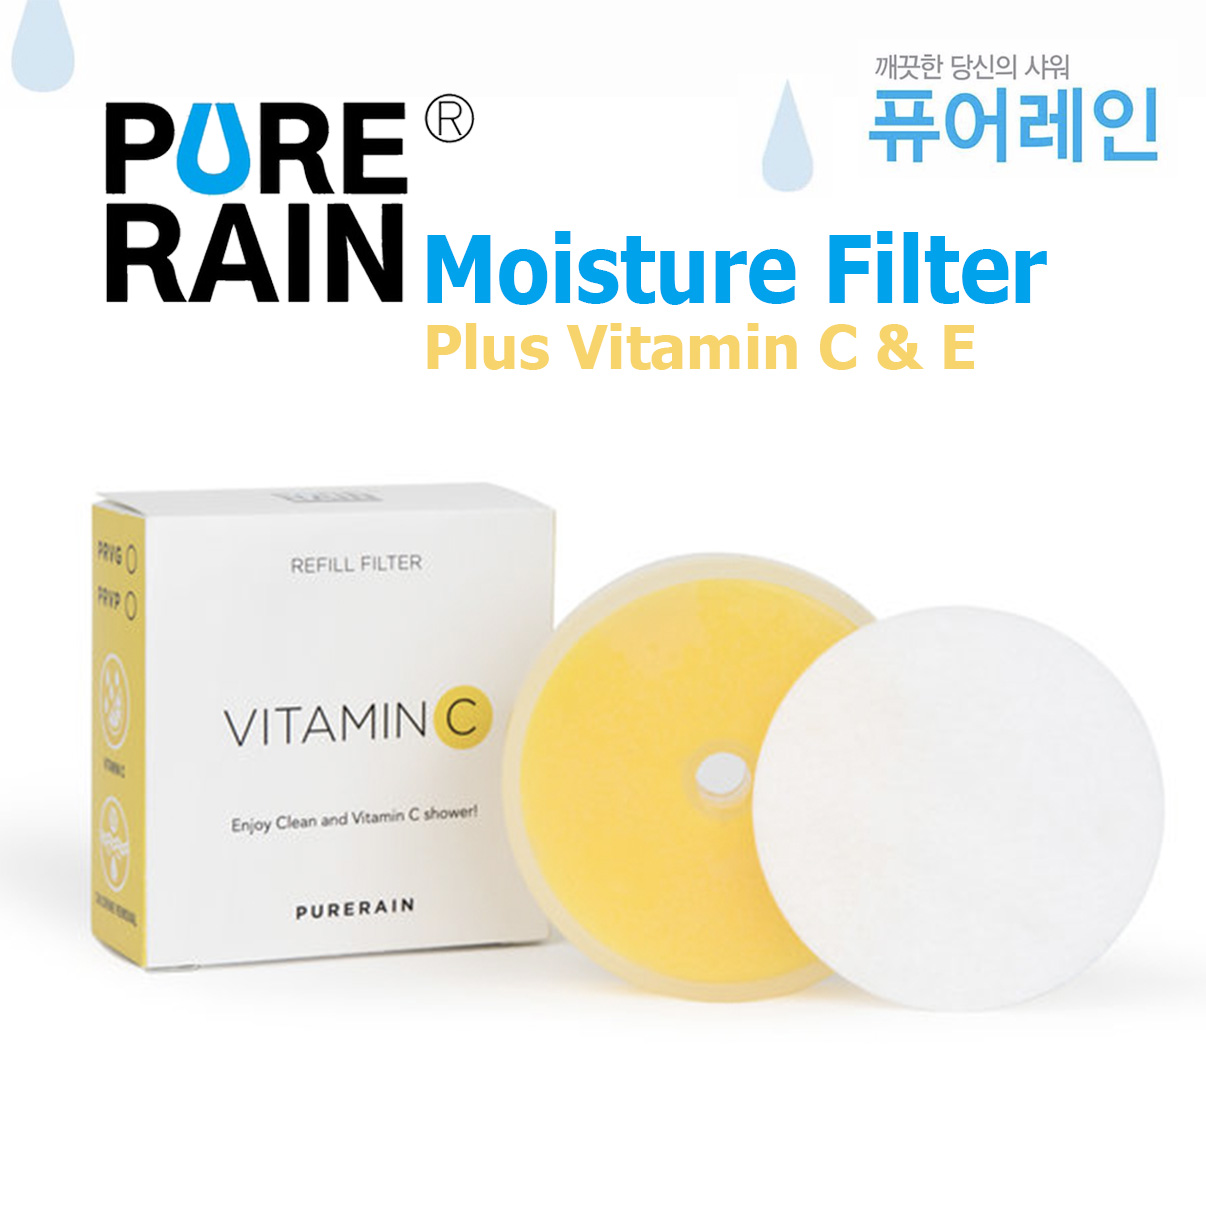 Moisture Filter PURE RAIN For Refill Chlorine Removal Moisturizing Effect Vitamin C  27% สำหรับฝักบัวที่ขายดีอันดับ 1 ในเกาหลี